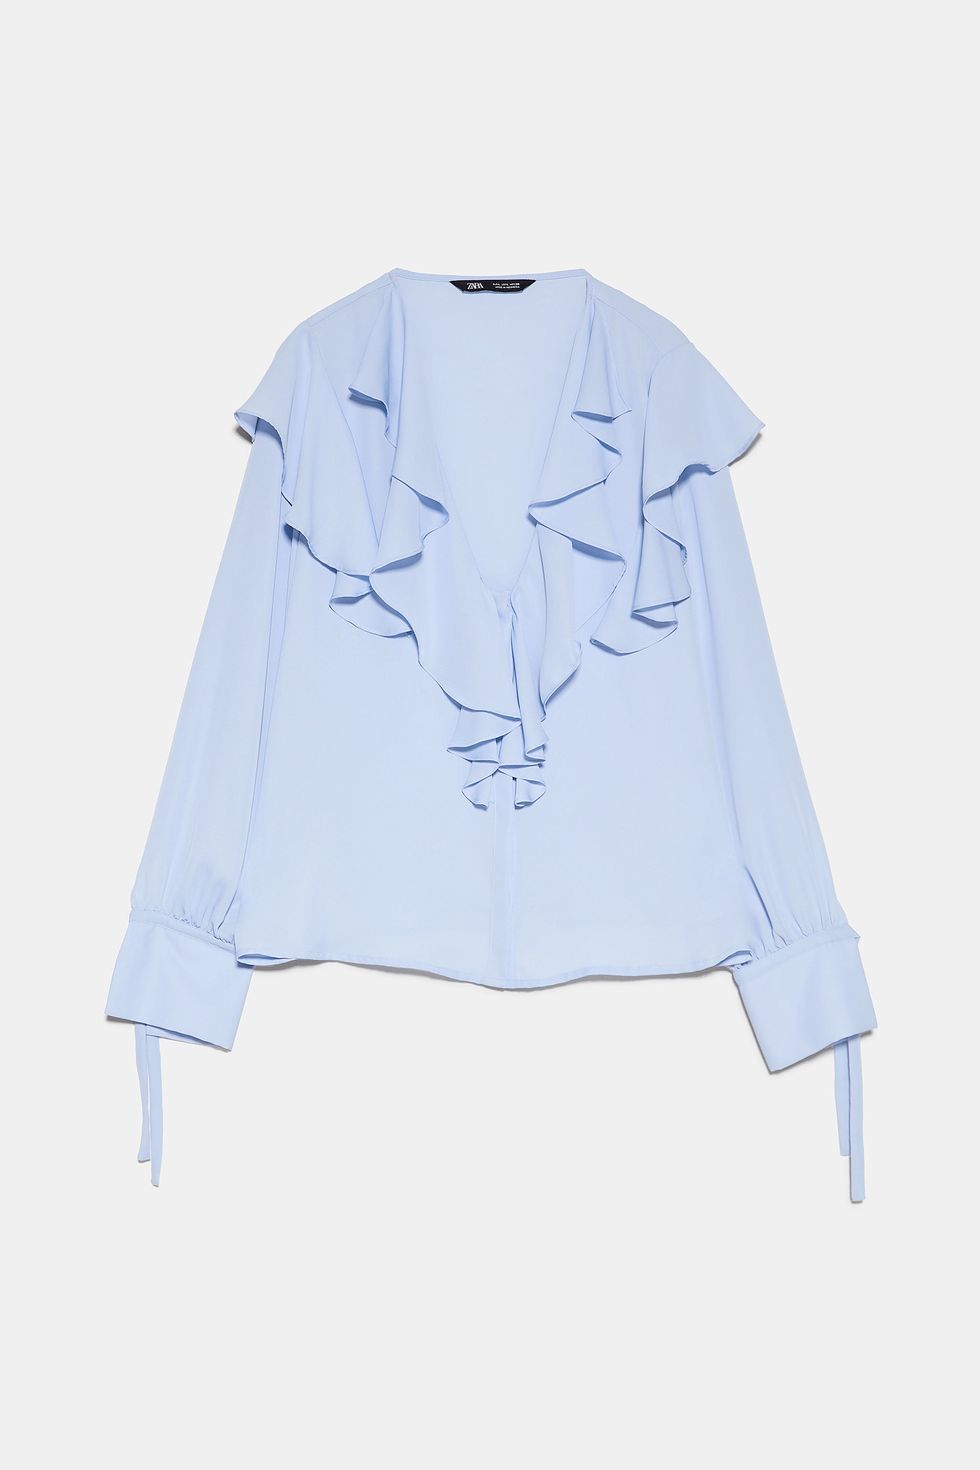 Zara a lanzar la blusa con volantes celeste más famosa de Instagram